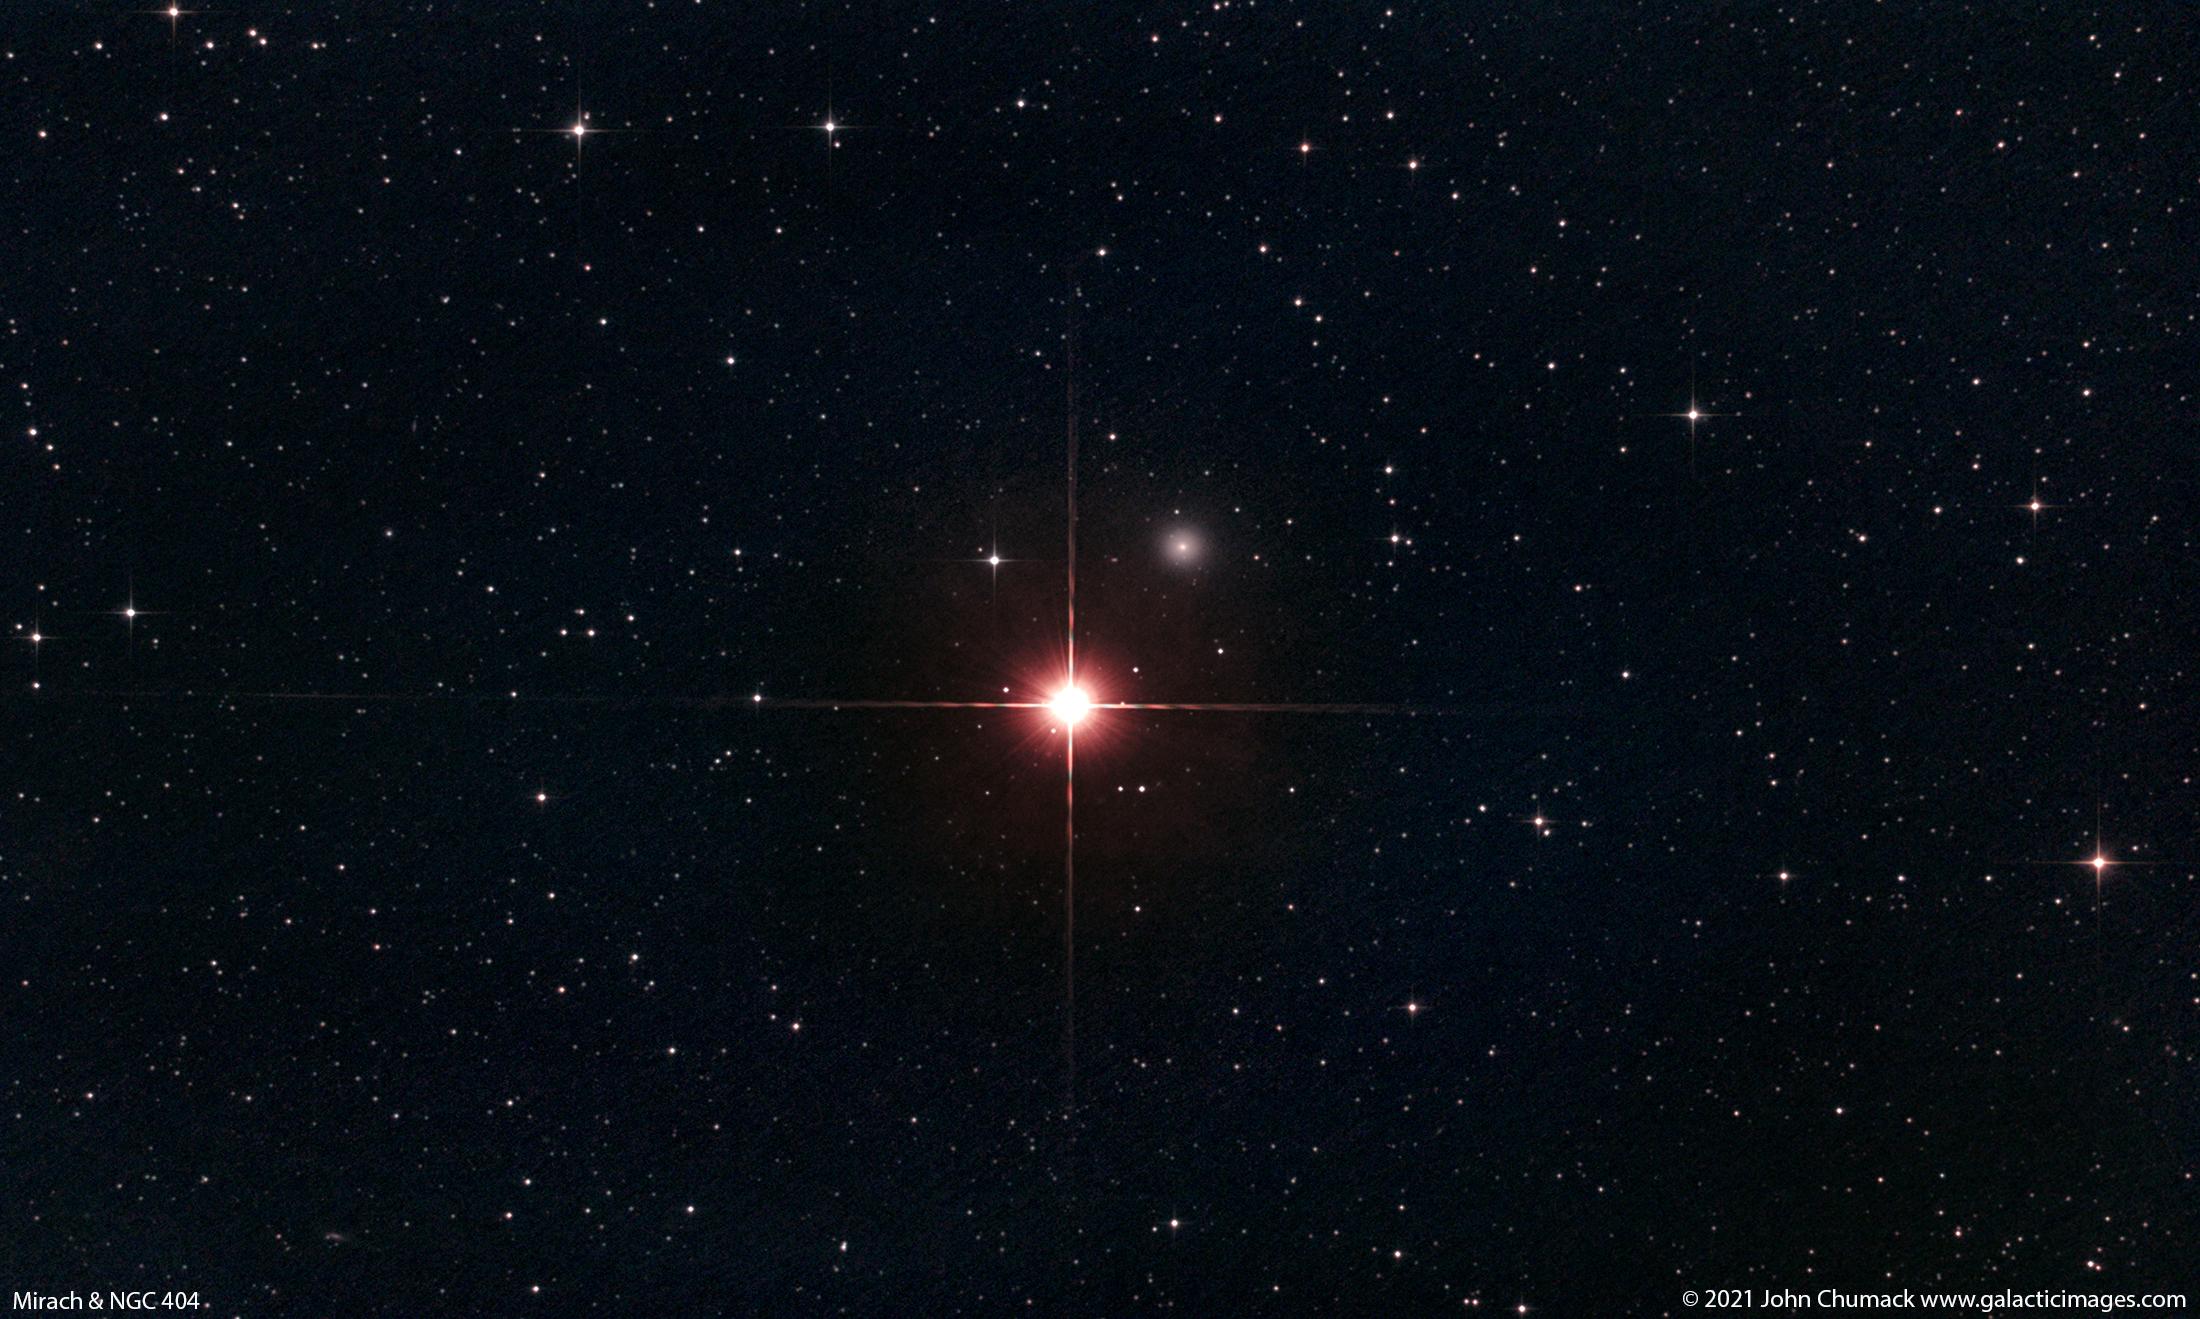 صورة للفضاء العميق تُظهر نجماً ساطعاً ذو انحرافات ضوئية مدببة بالإتجاهات الأربع، بينما تظهر مجرّة زغباء صغيرة بقربه على أعلى اليمين، بينما تتناثر العديد من النجوم على امتداد الصورة